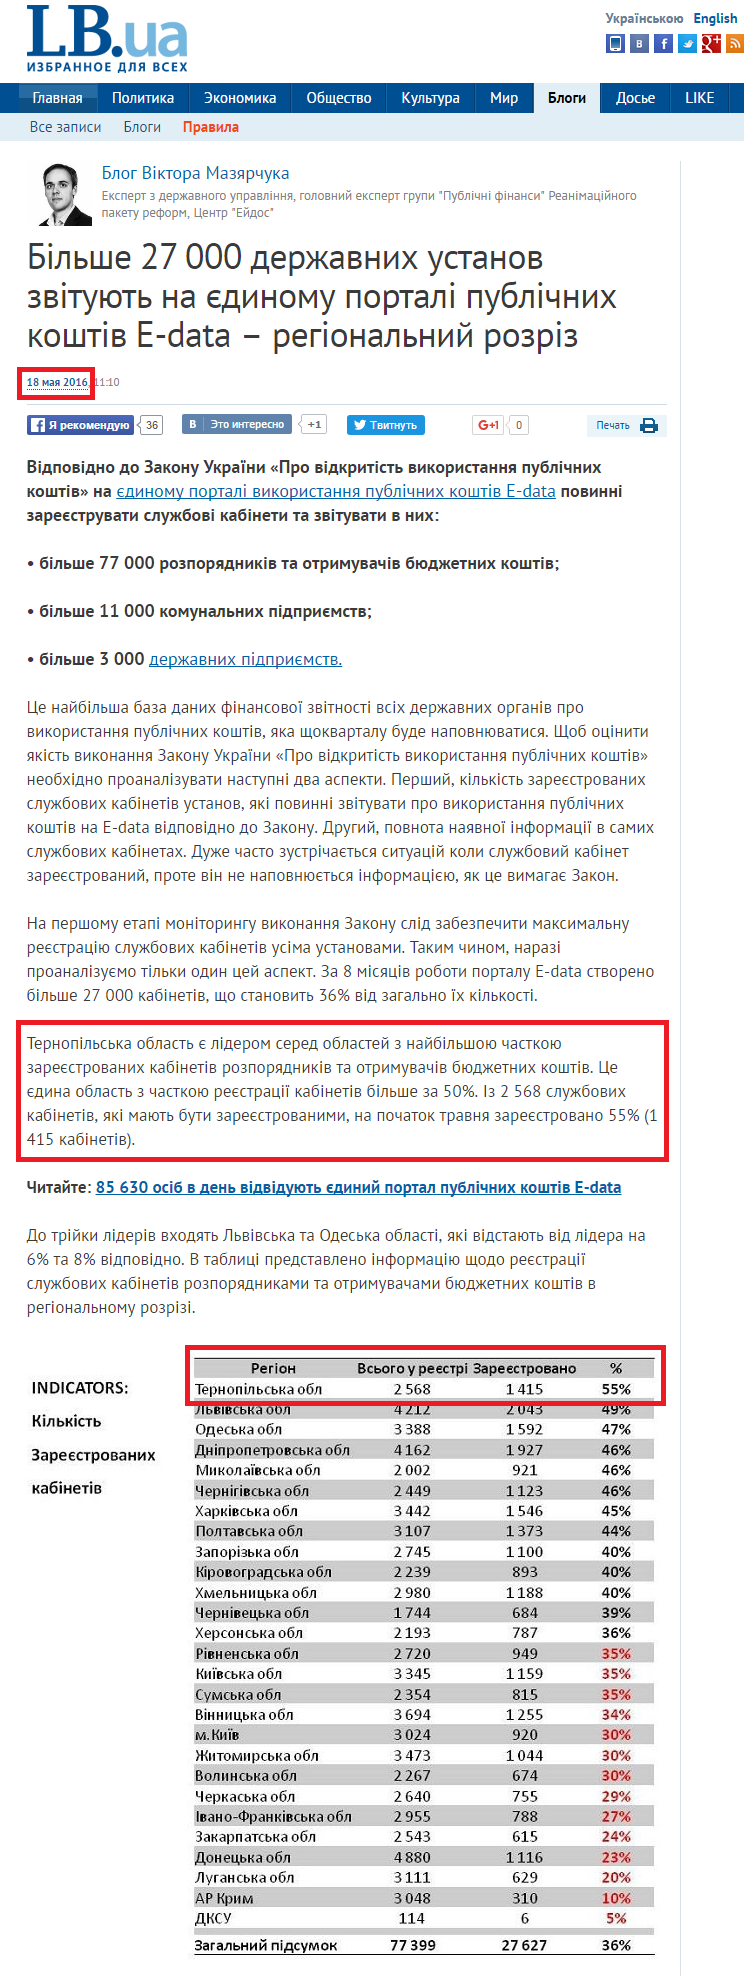 http://blogs.lb.ua/victor_mazyarchuk/335408_bilshe_27_000_derzhavnih_ustanov.html?utm_source=local&utm_medium=cpm&utm_campaign=blog